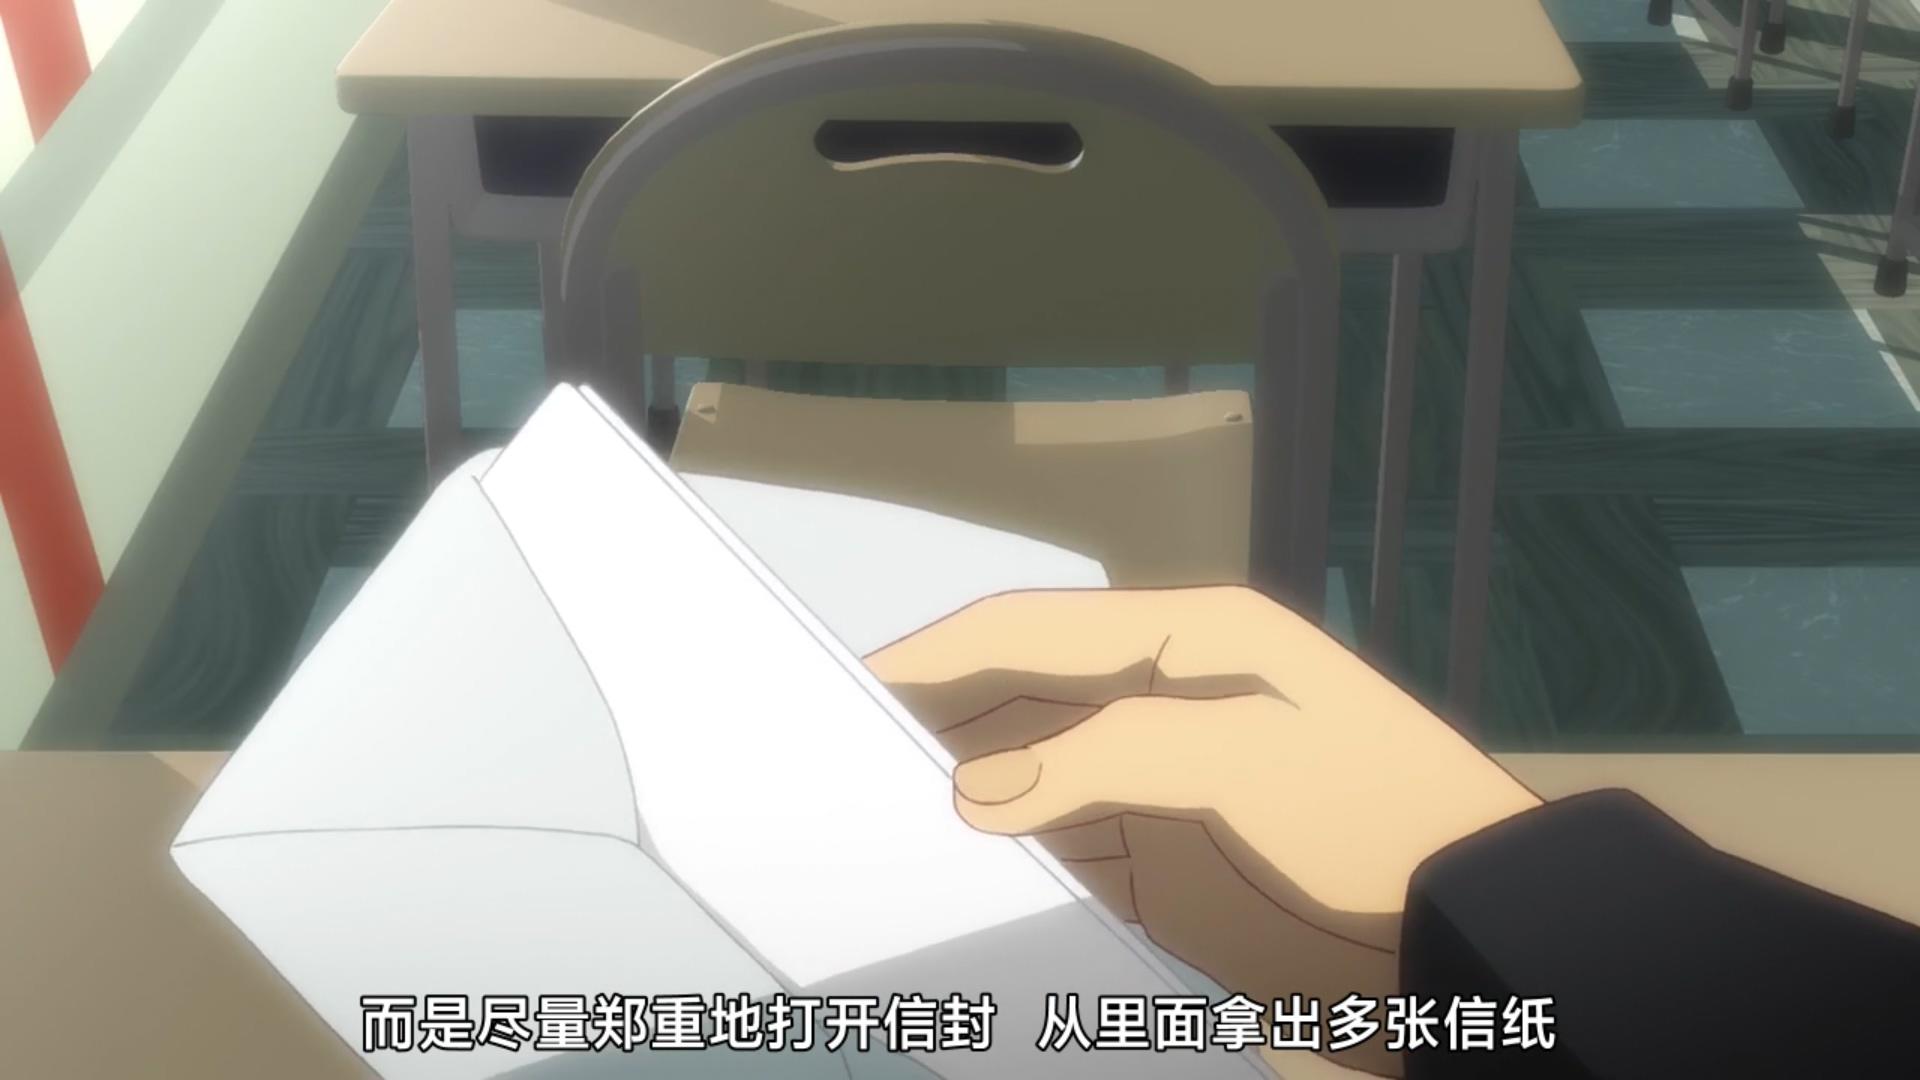 终物语 第6集 最后老仓育留给垃圾君的信上到底说了什么 一一短知乎